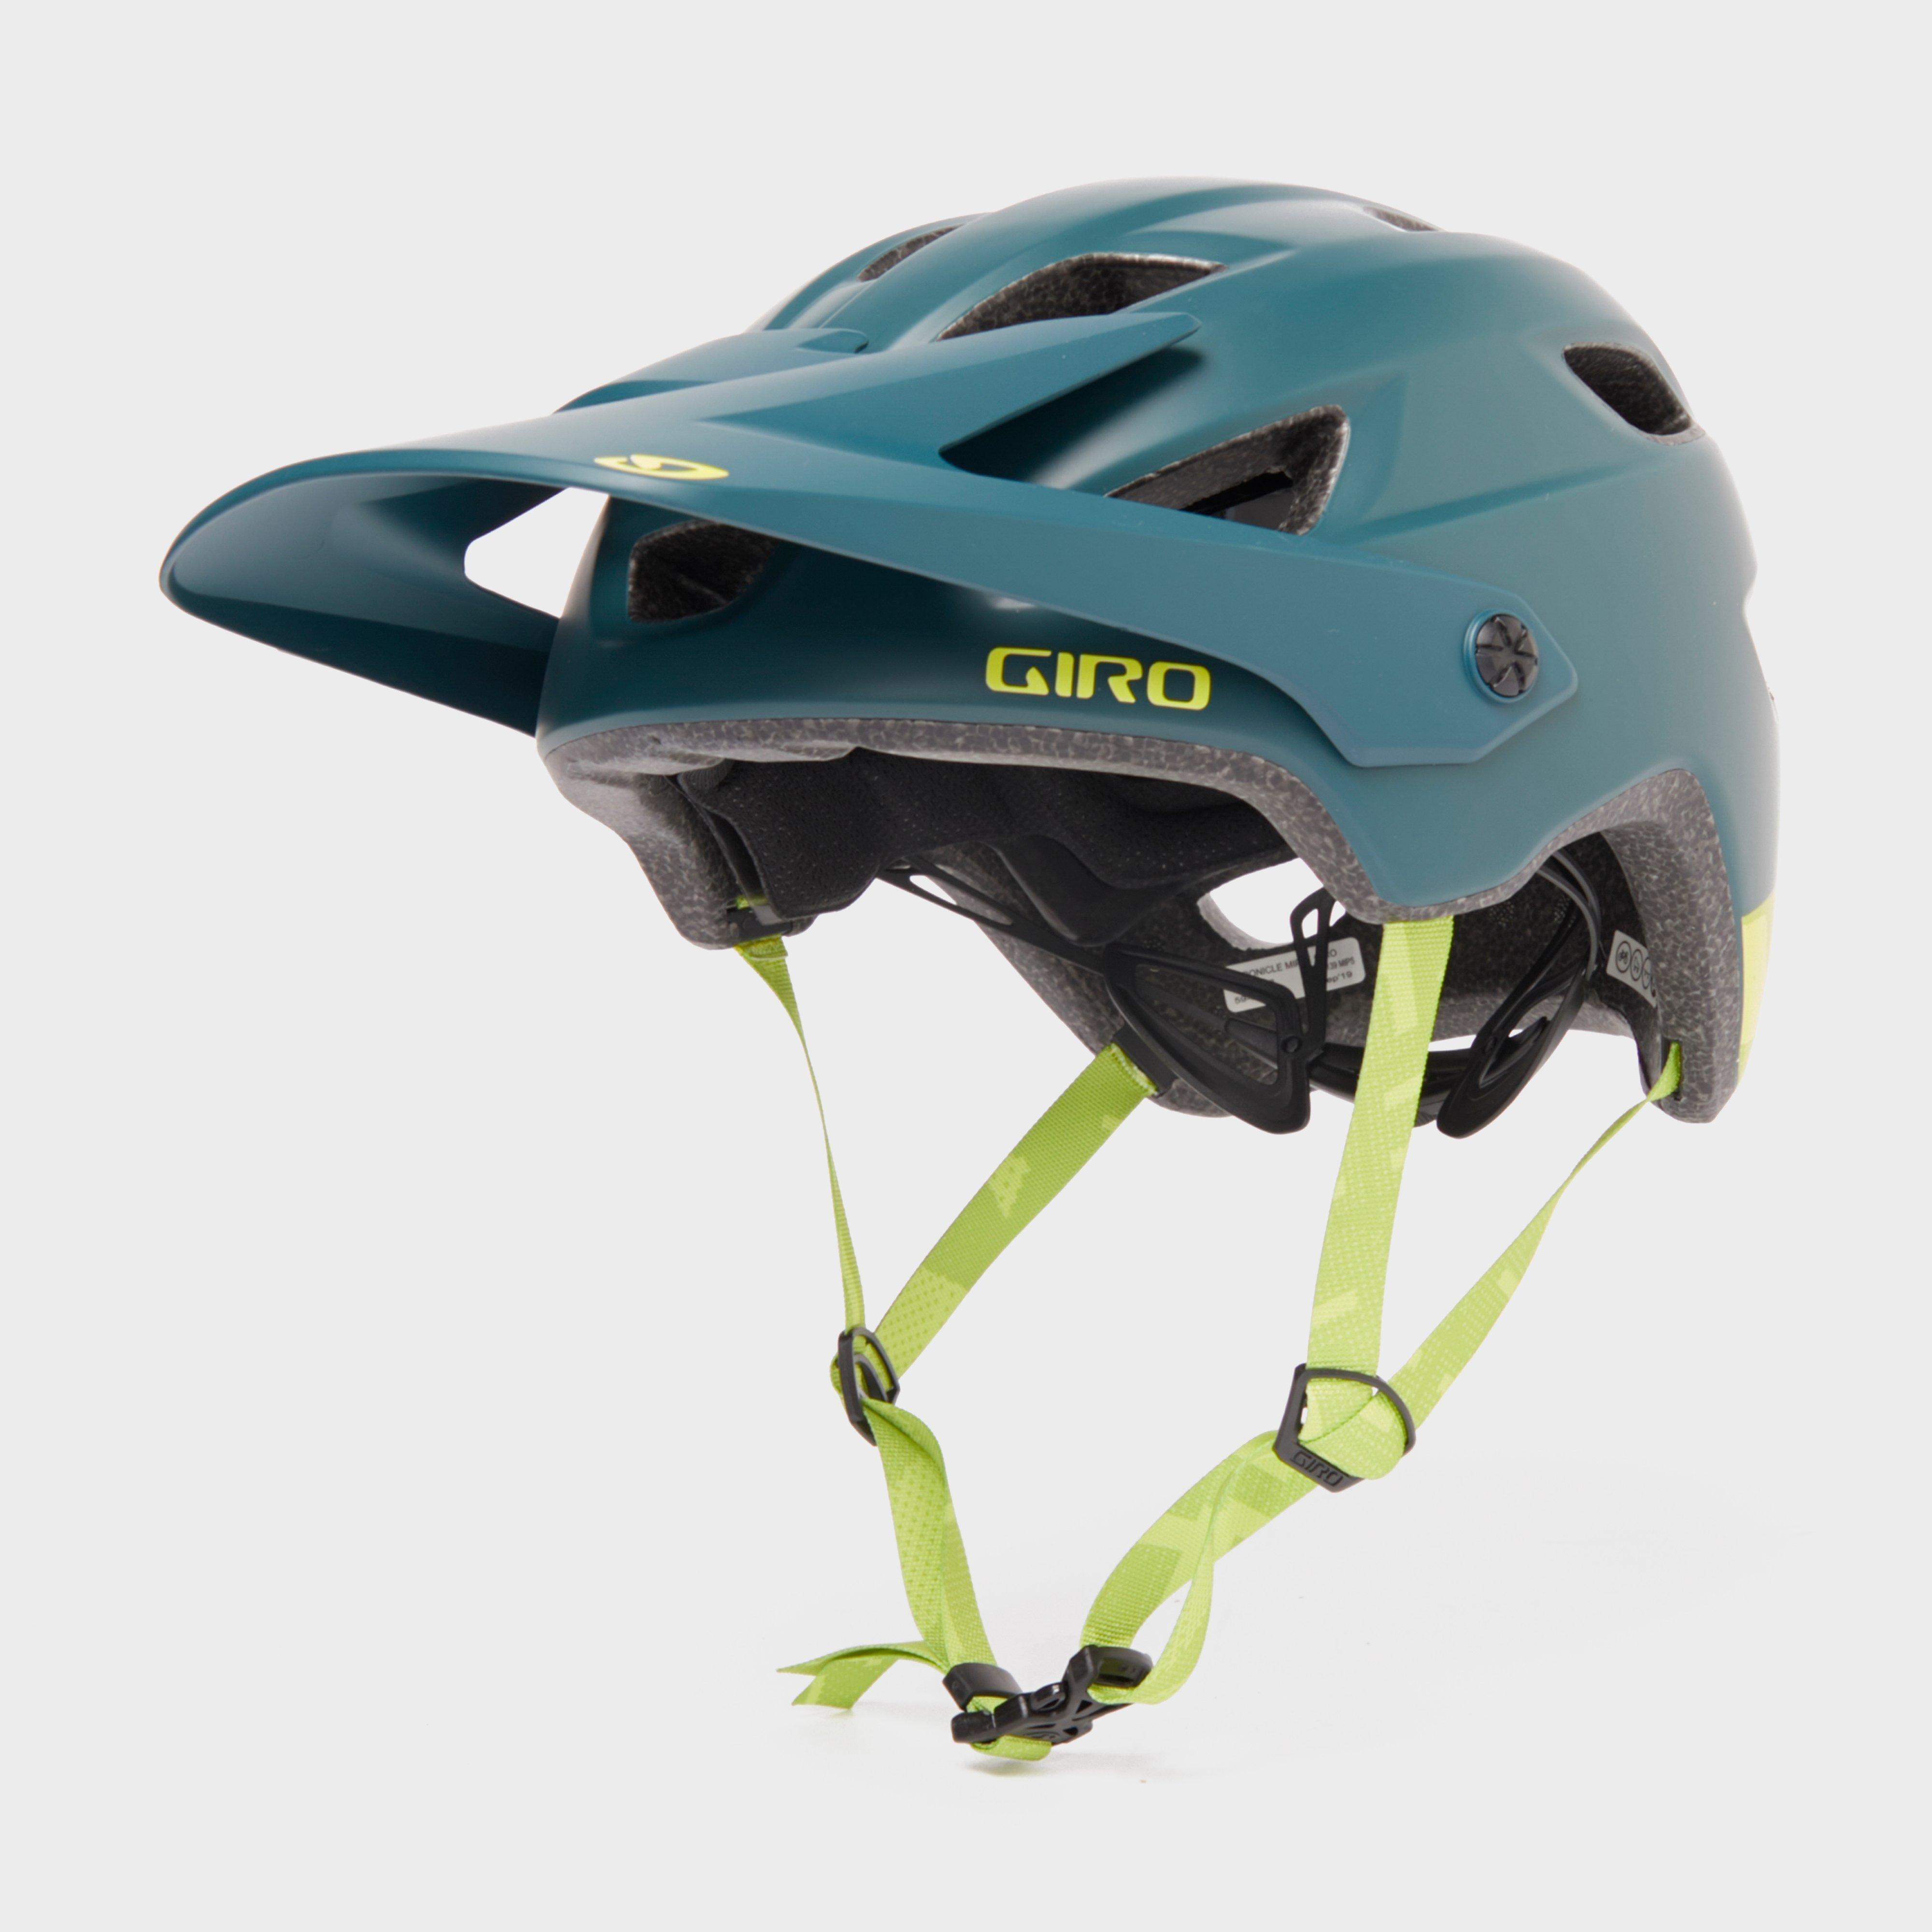 giro chronicle mips helmet - turquoise, turquoise